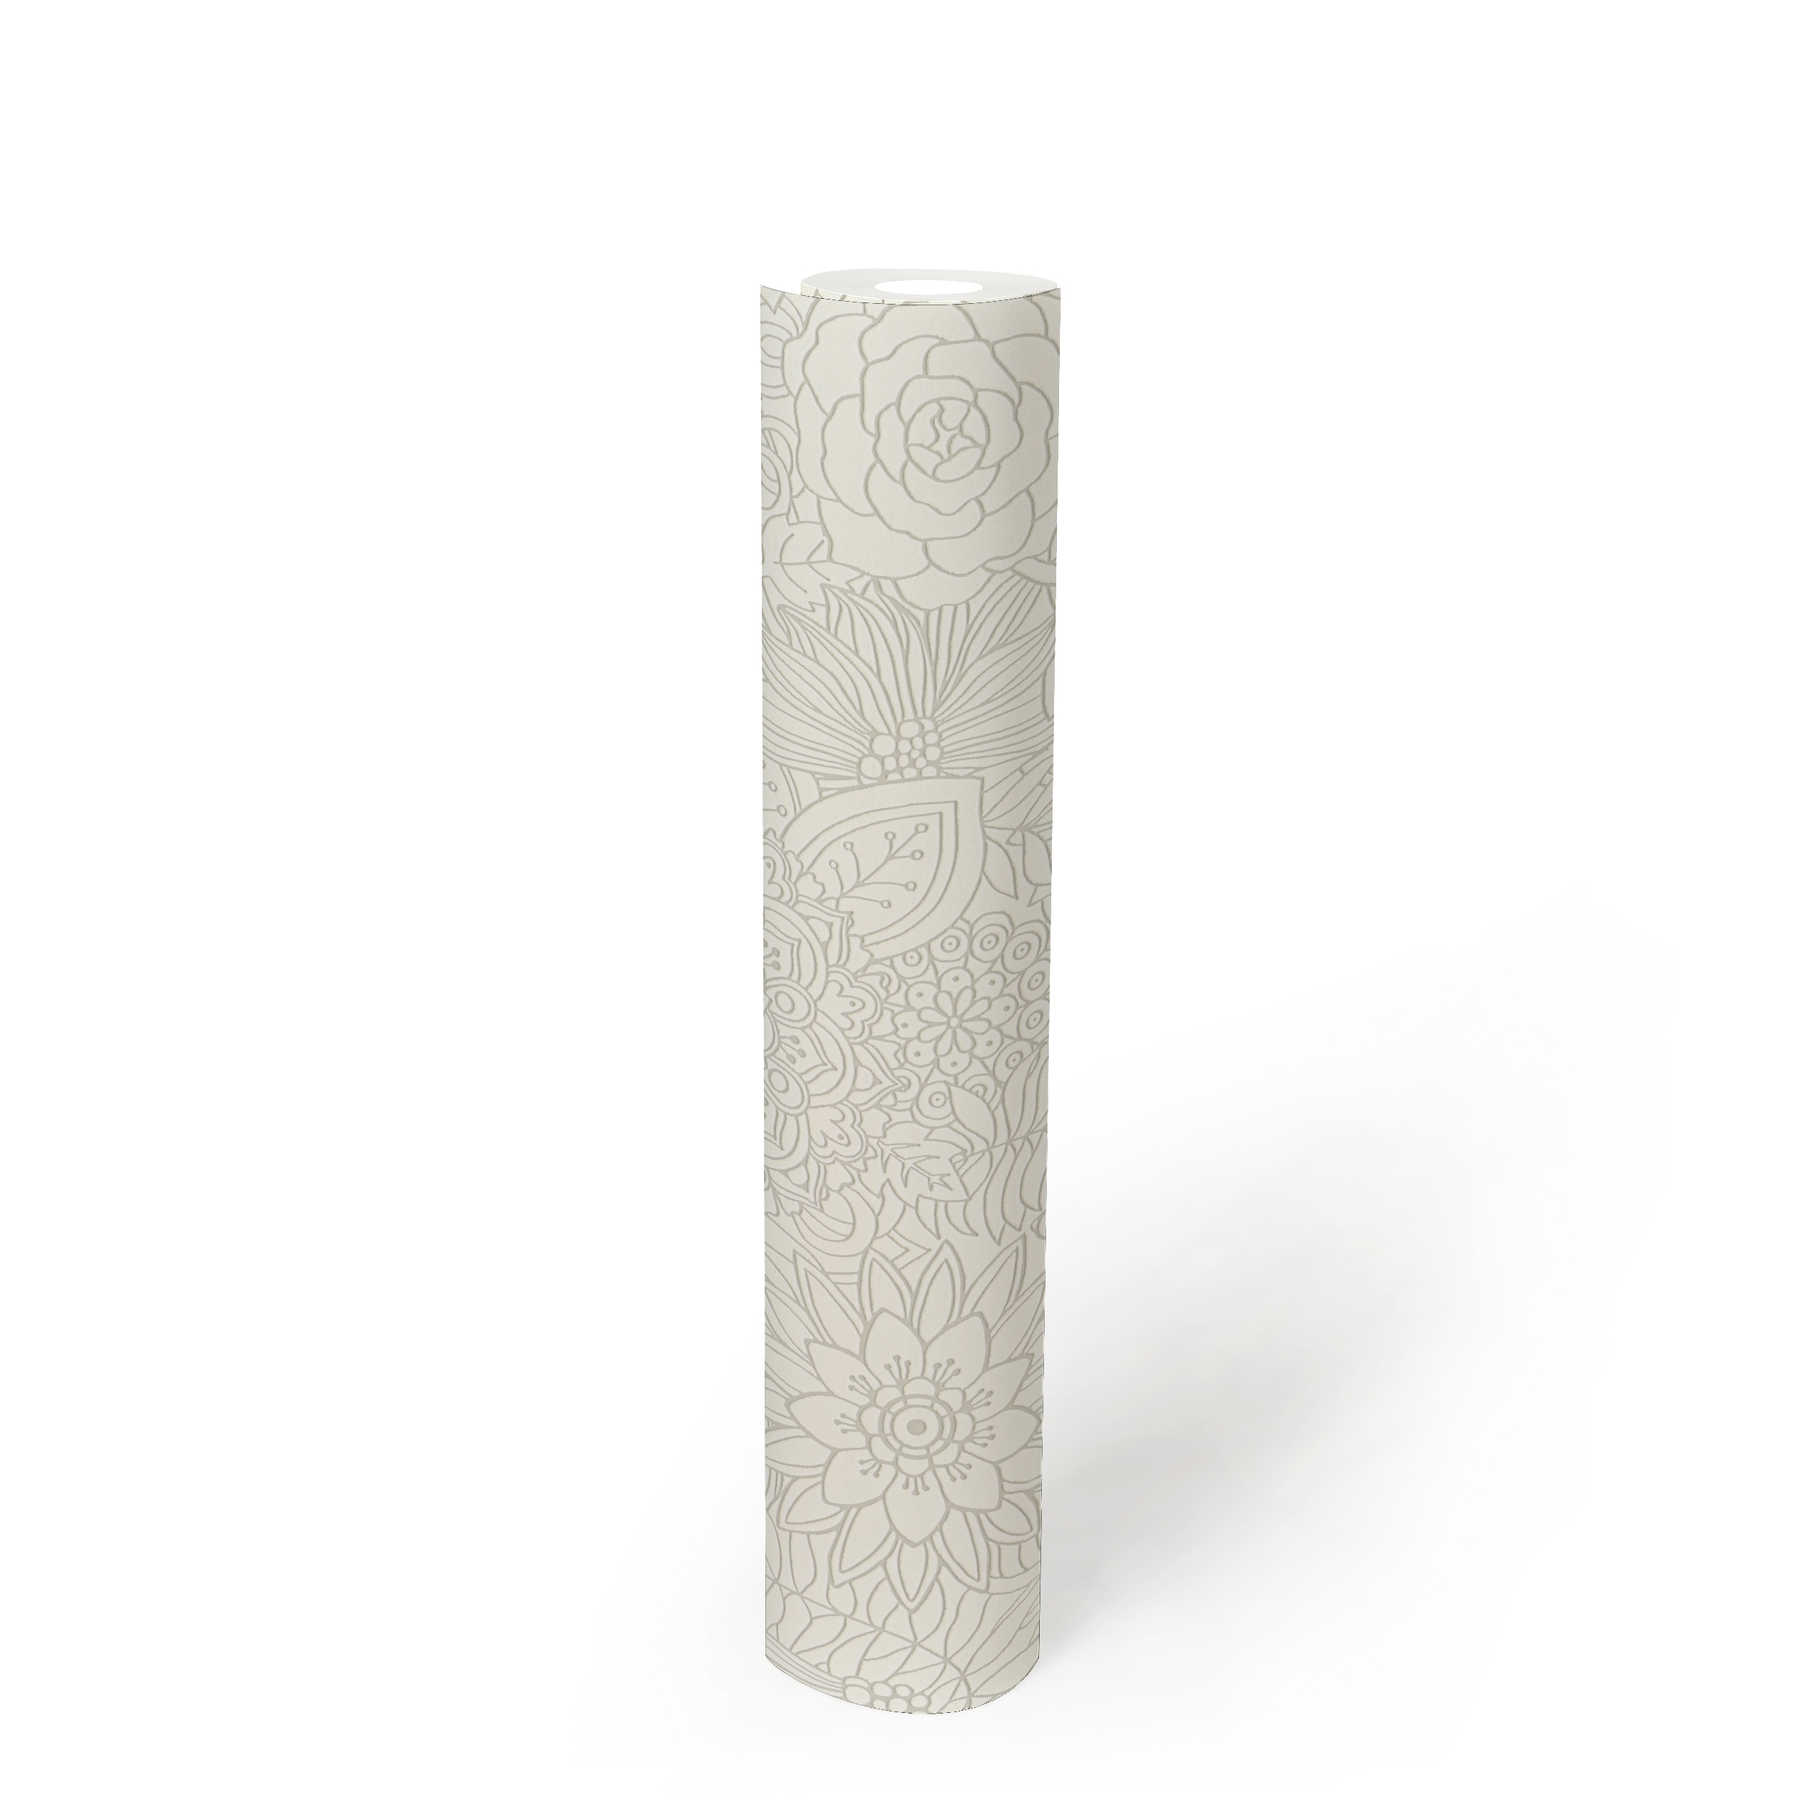             Papier peint intissé design floral doodle, mat & brillant - blanc,
        